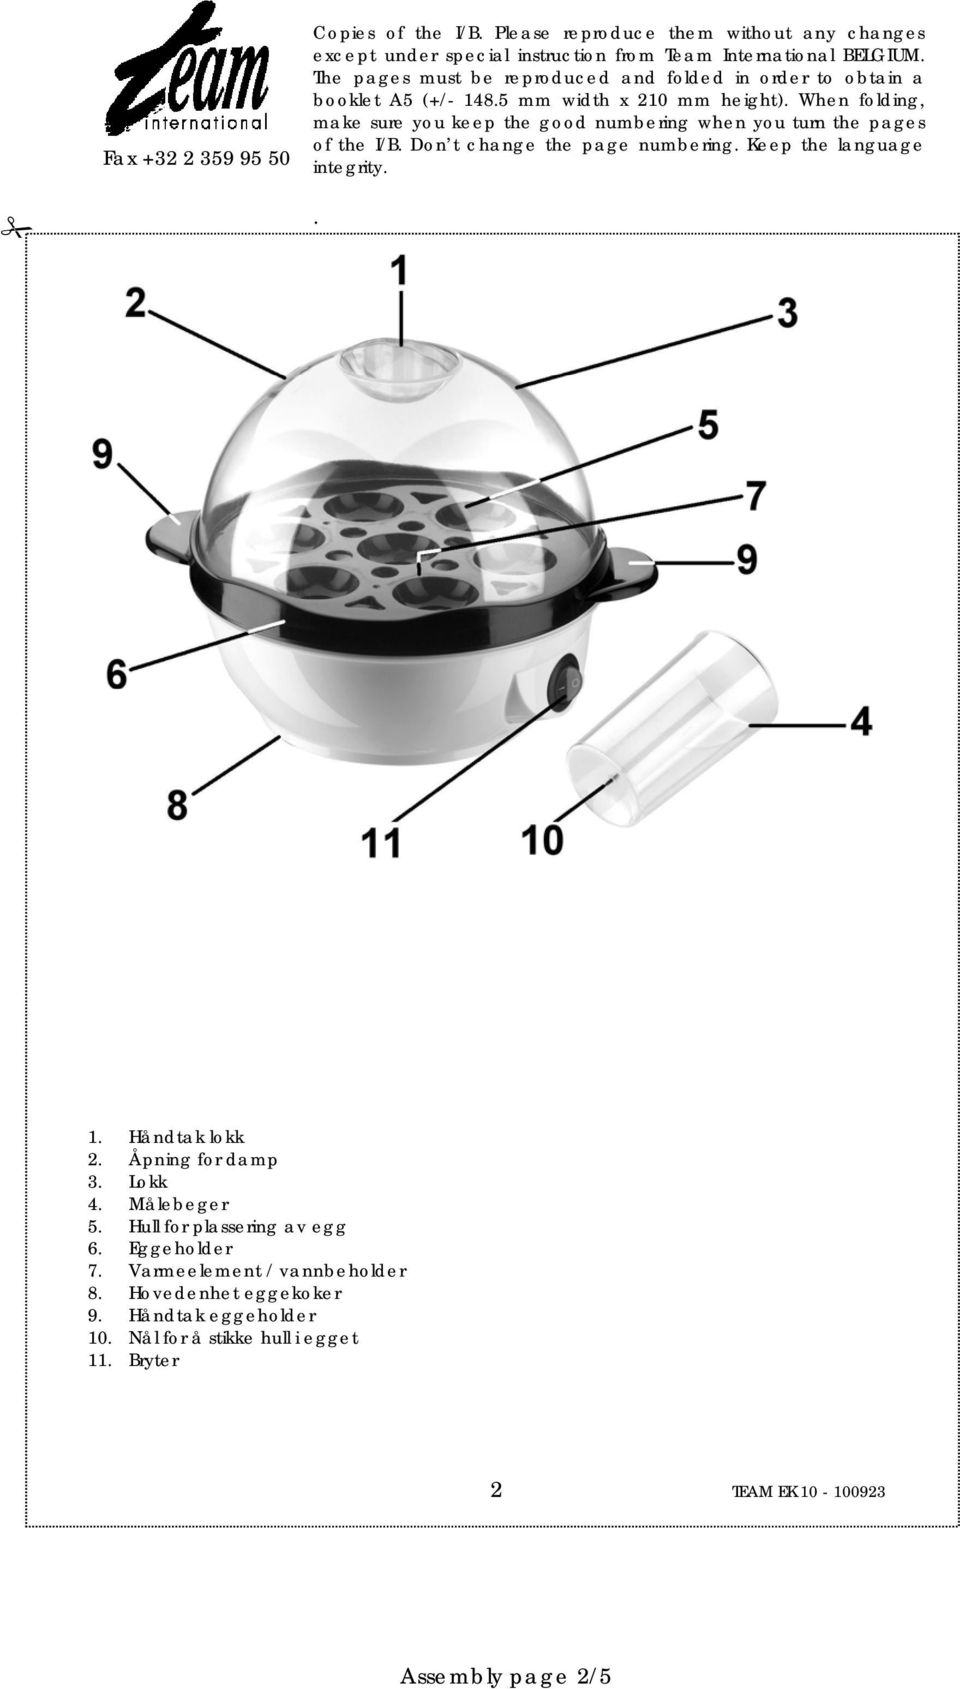 Varmeelement / vannbeholder 8. Hovedenhet eggekoker 9.